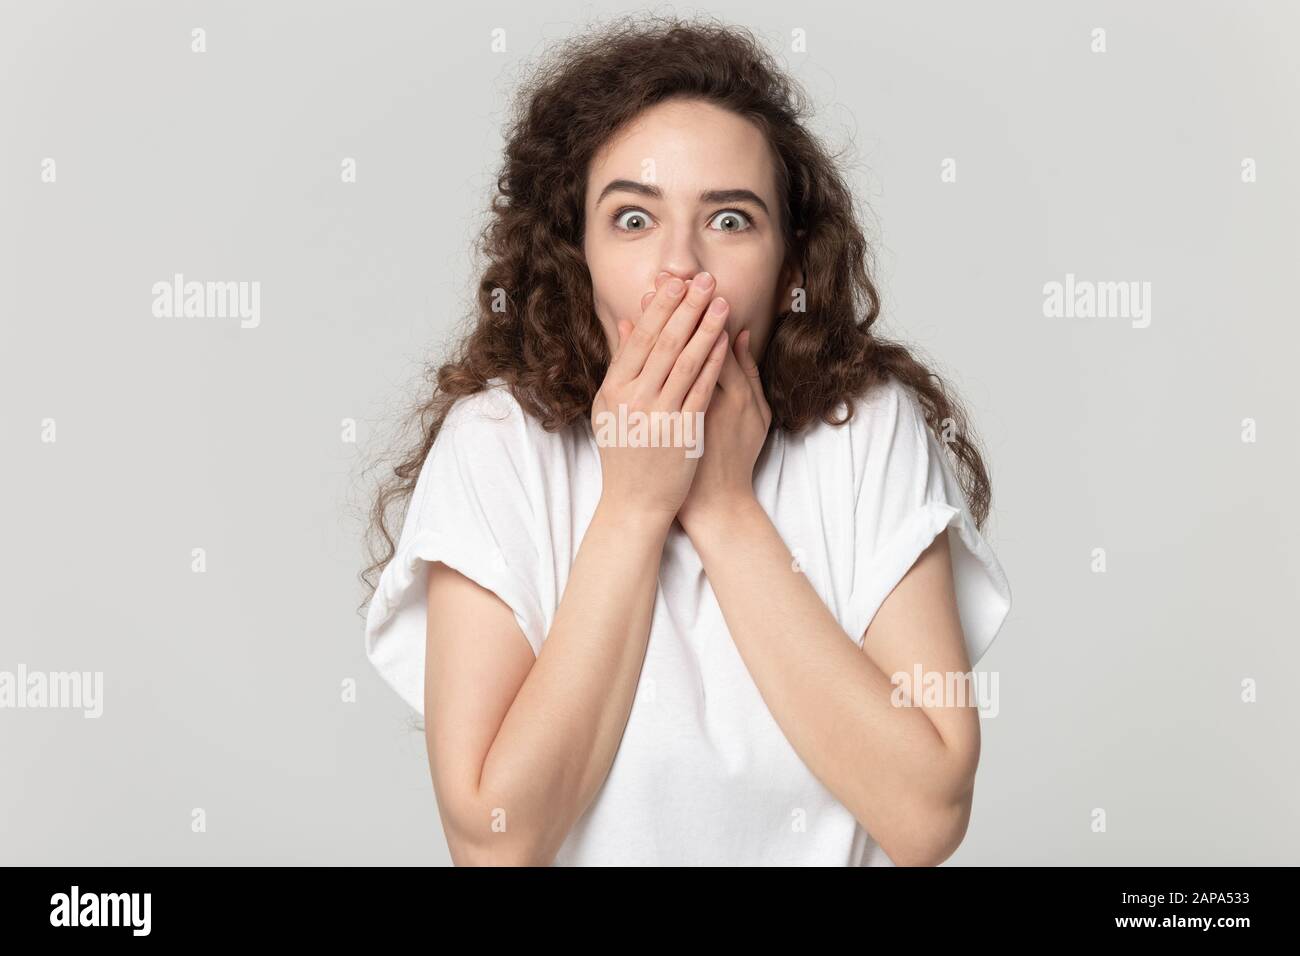 Verblüffte Frau, die den Mund mit beiden Händen bedeckt. Stockfoto